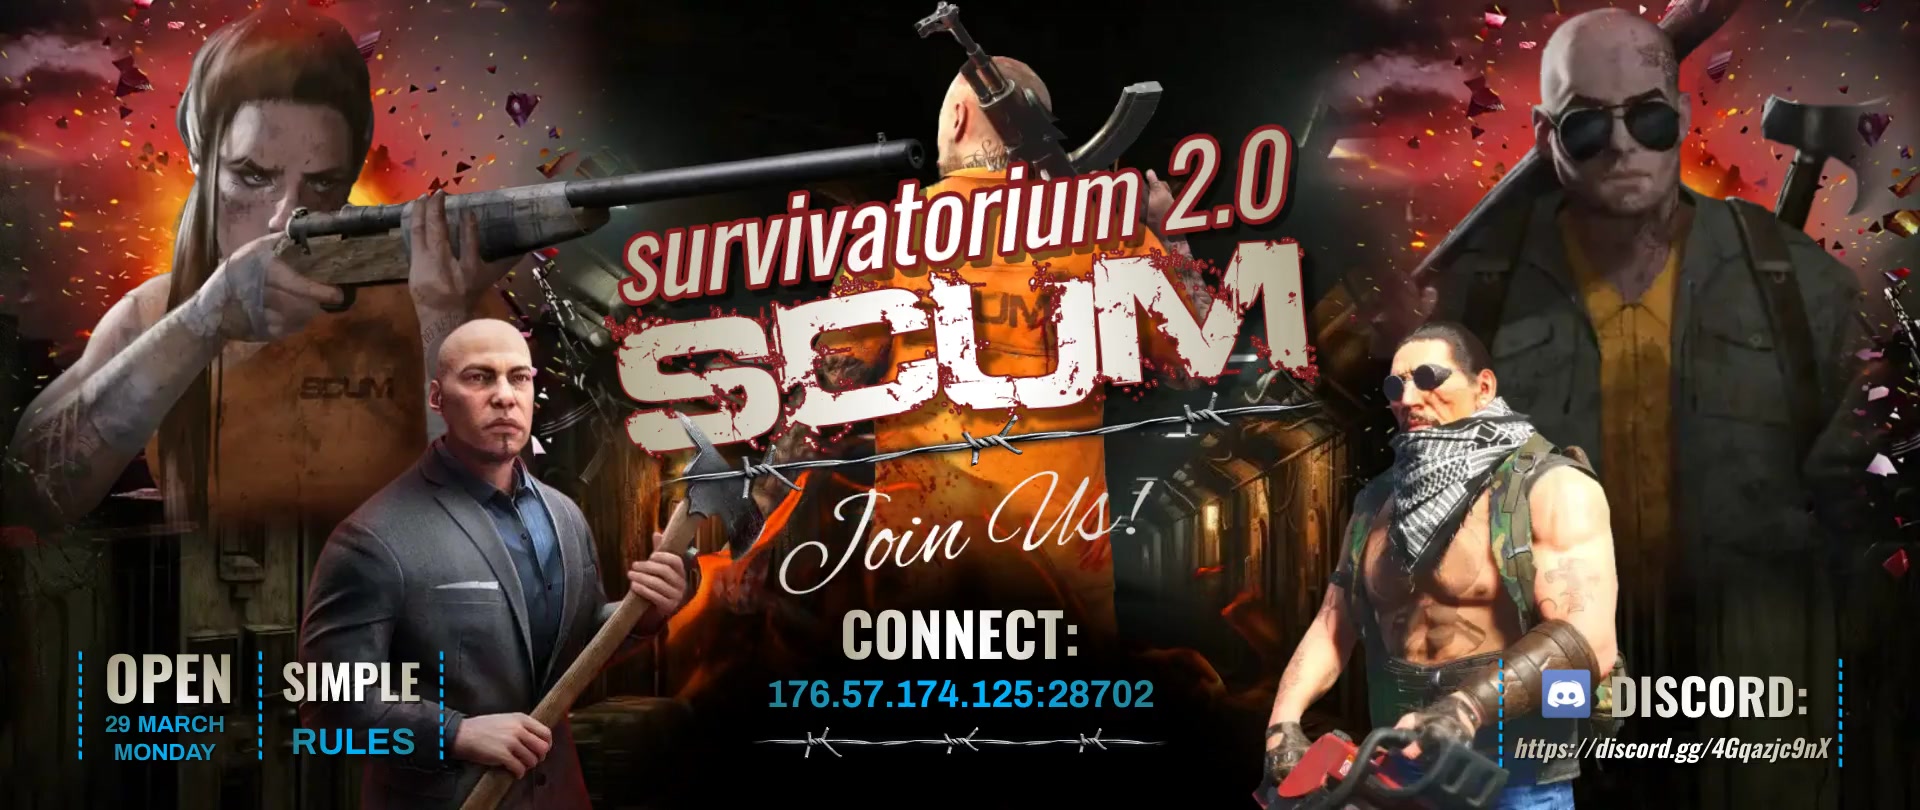 Welcome to Survivatorium!